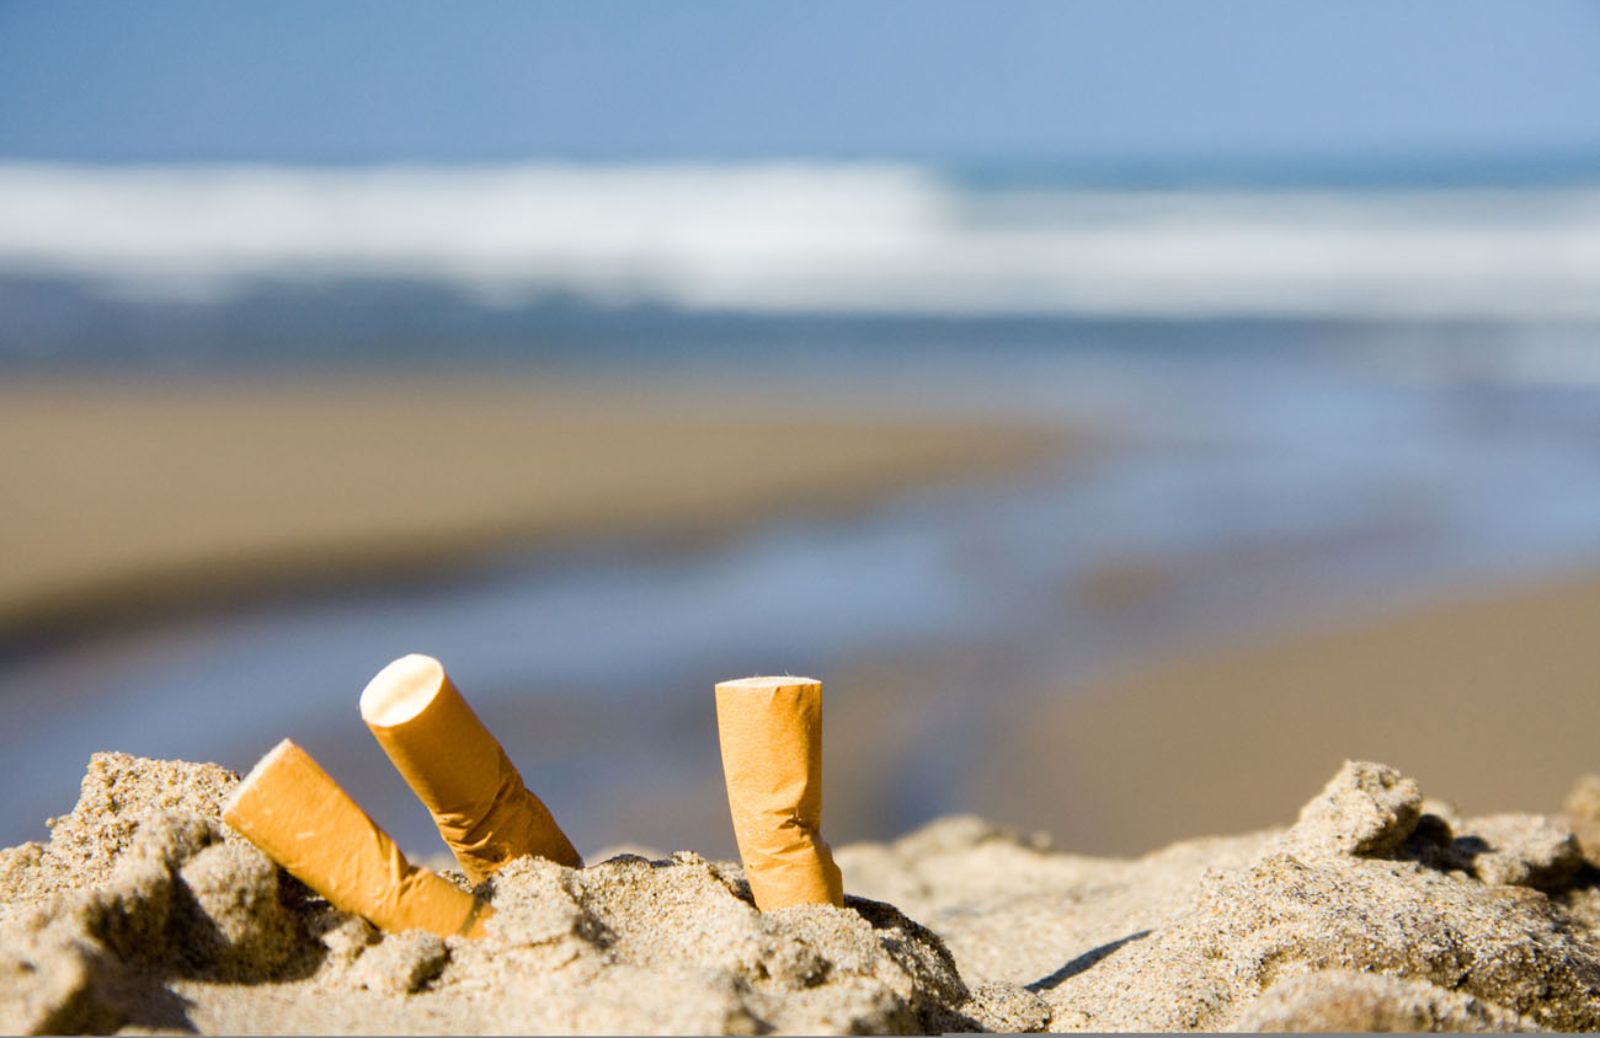 I mozziconi di sigaretta minacciano il mare